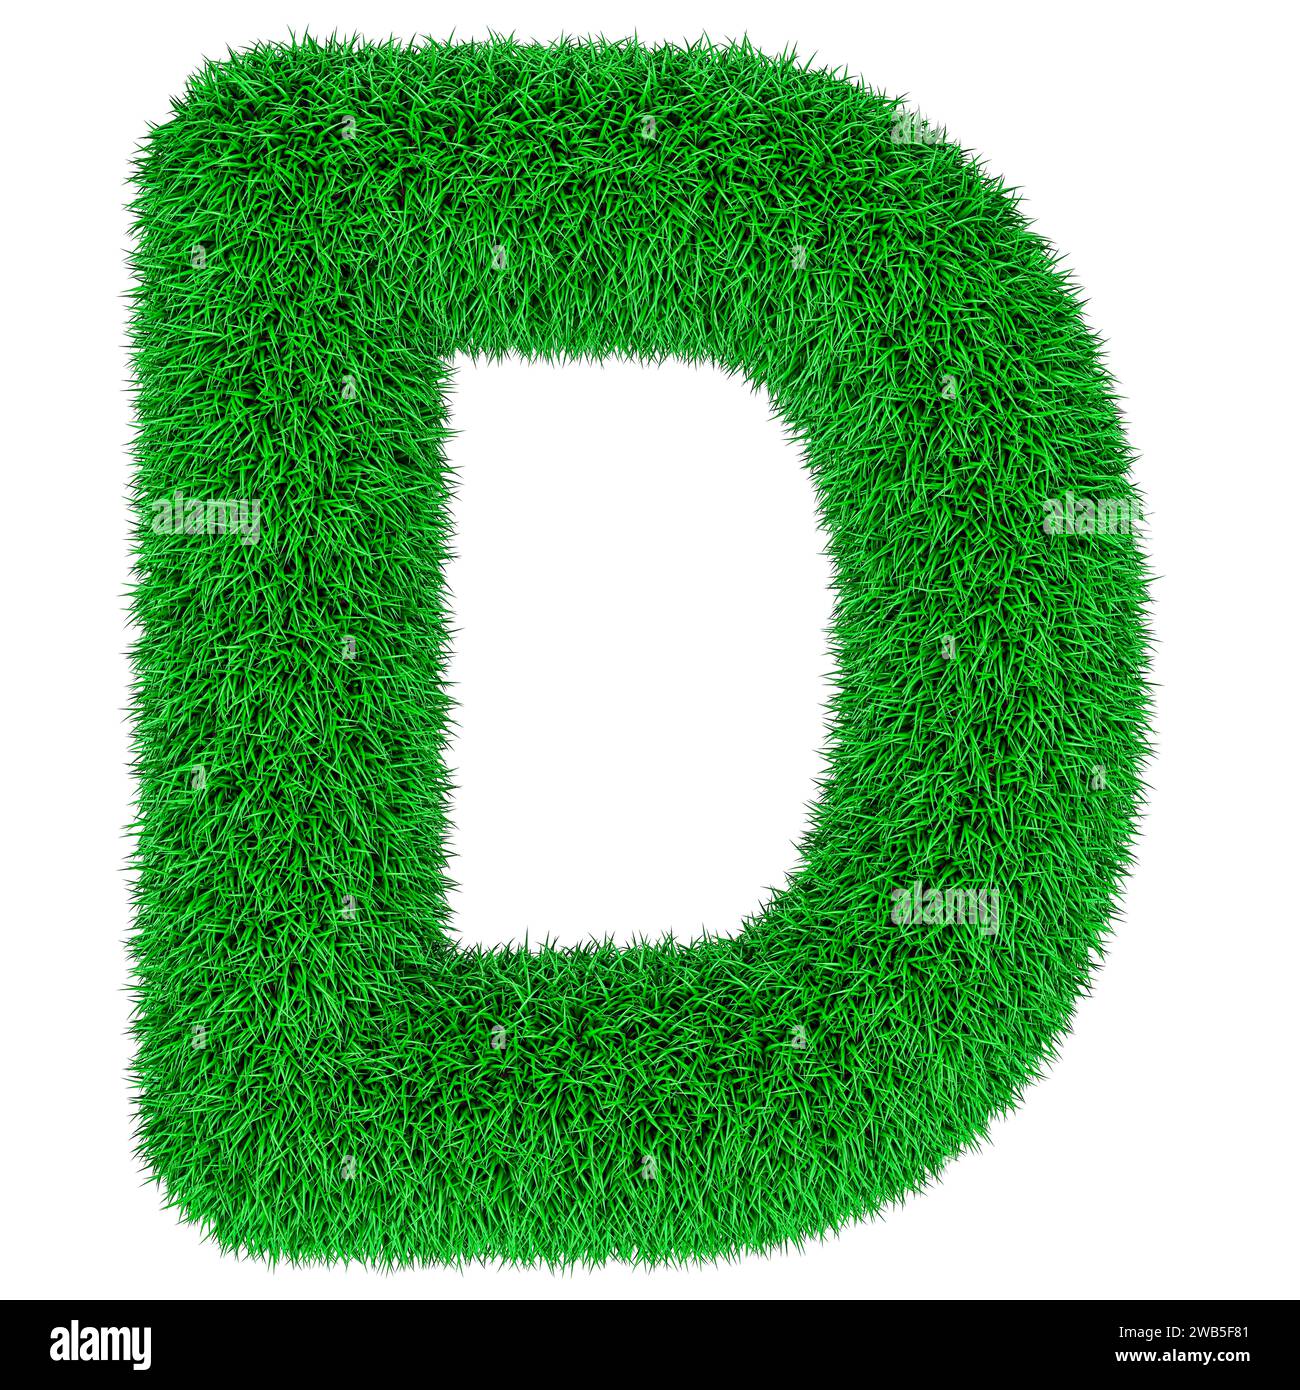 Vert herbe lettre D, rendu 3D isolé sur fond blanc Banque D'Images